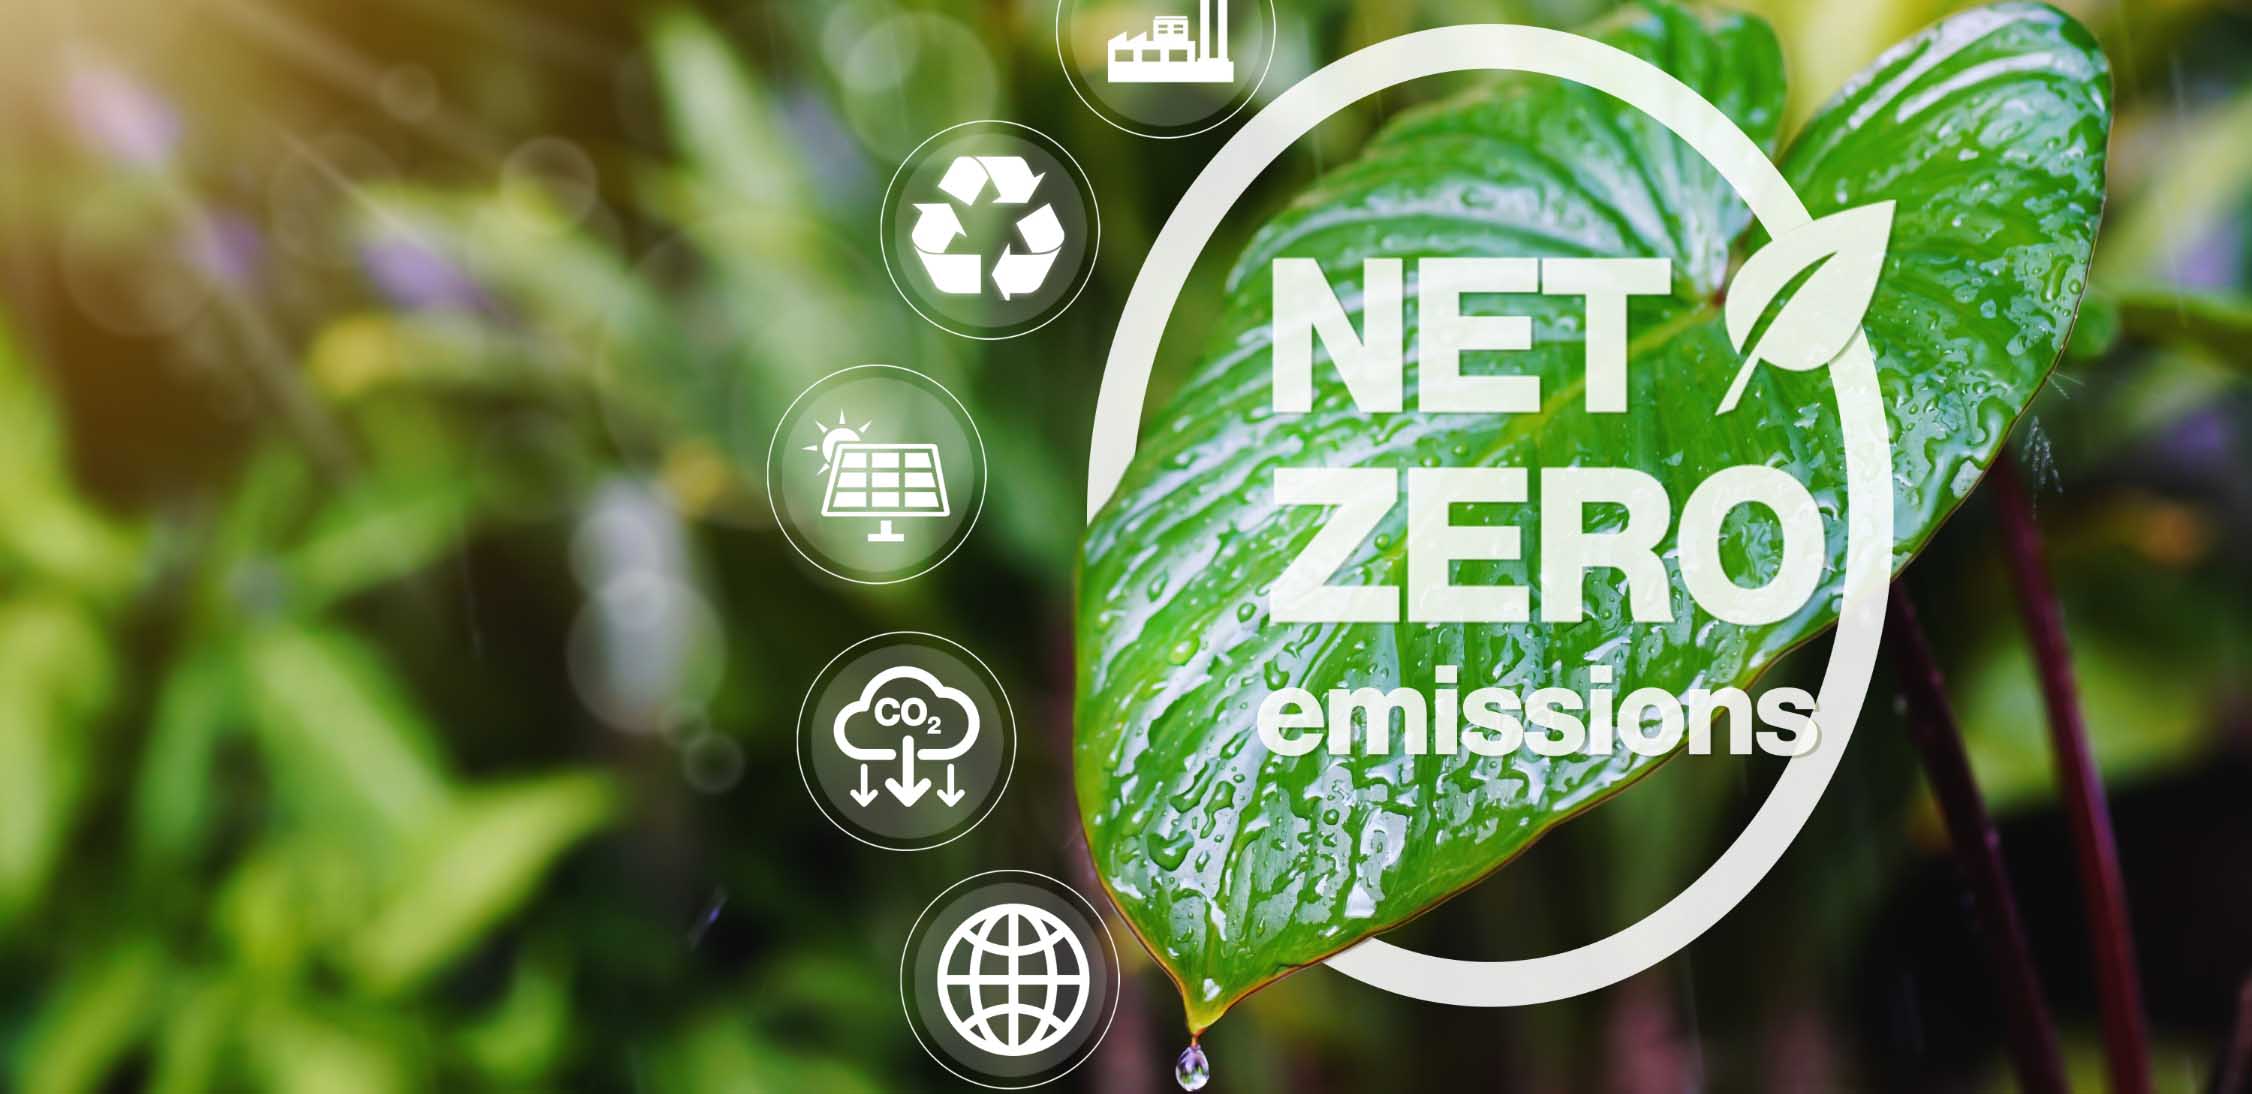 Die Rolle der Unternehmen bei der Bekämpfung des Klimawandels: Erreichen von Netto-Null-Emissionszielen